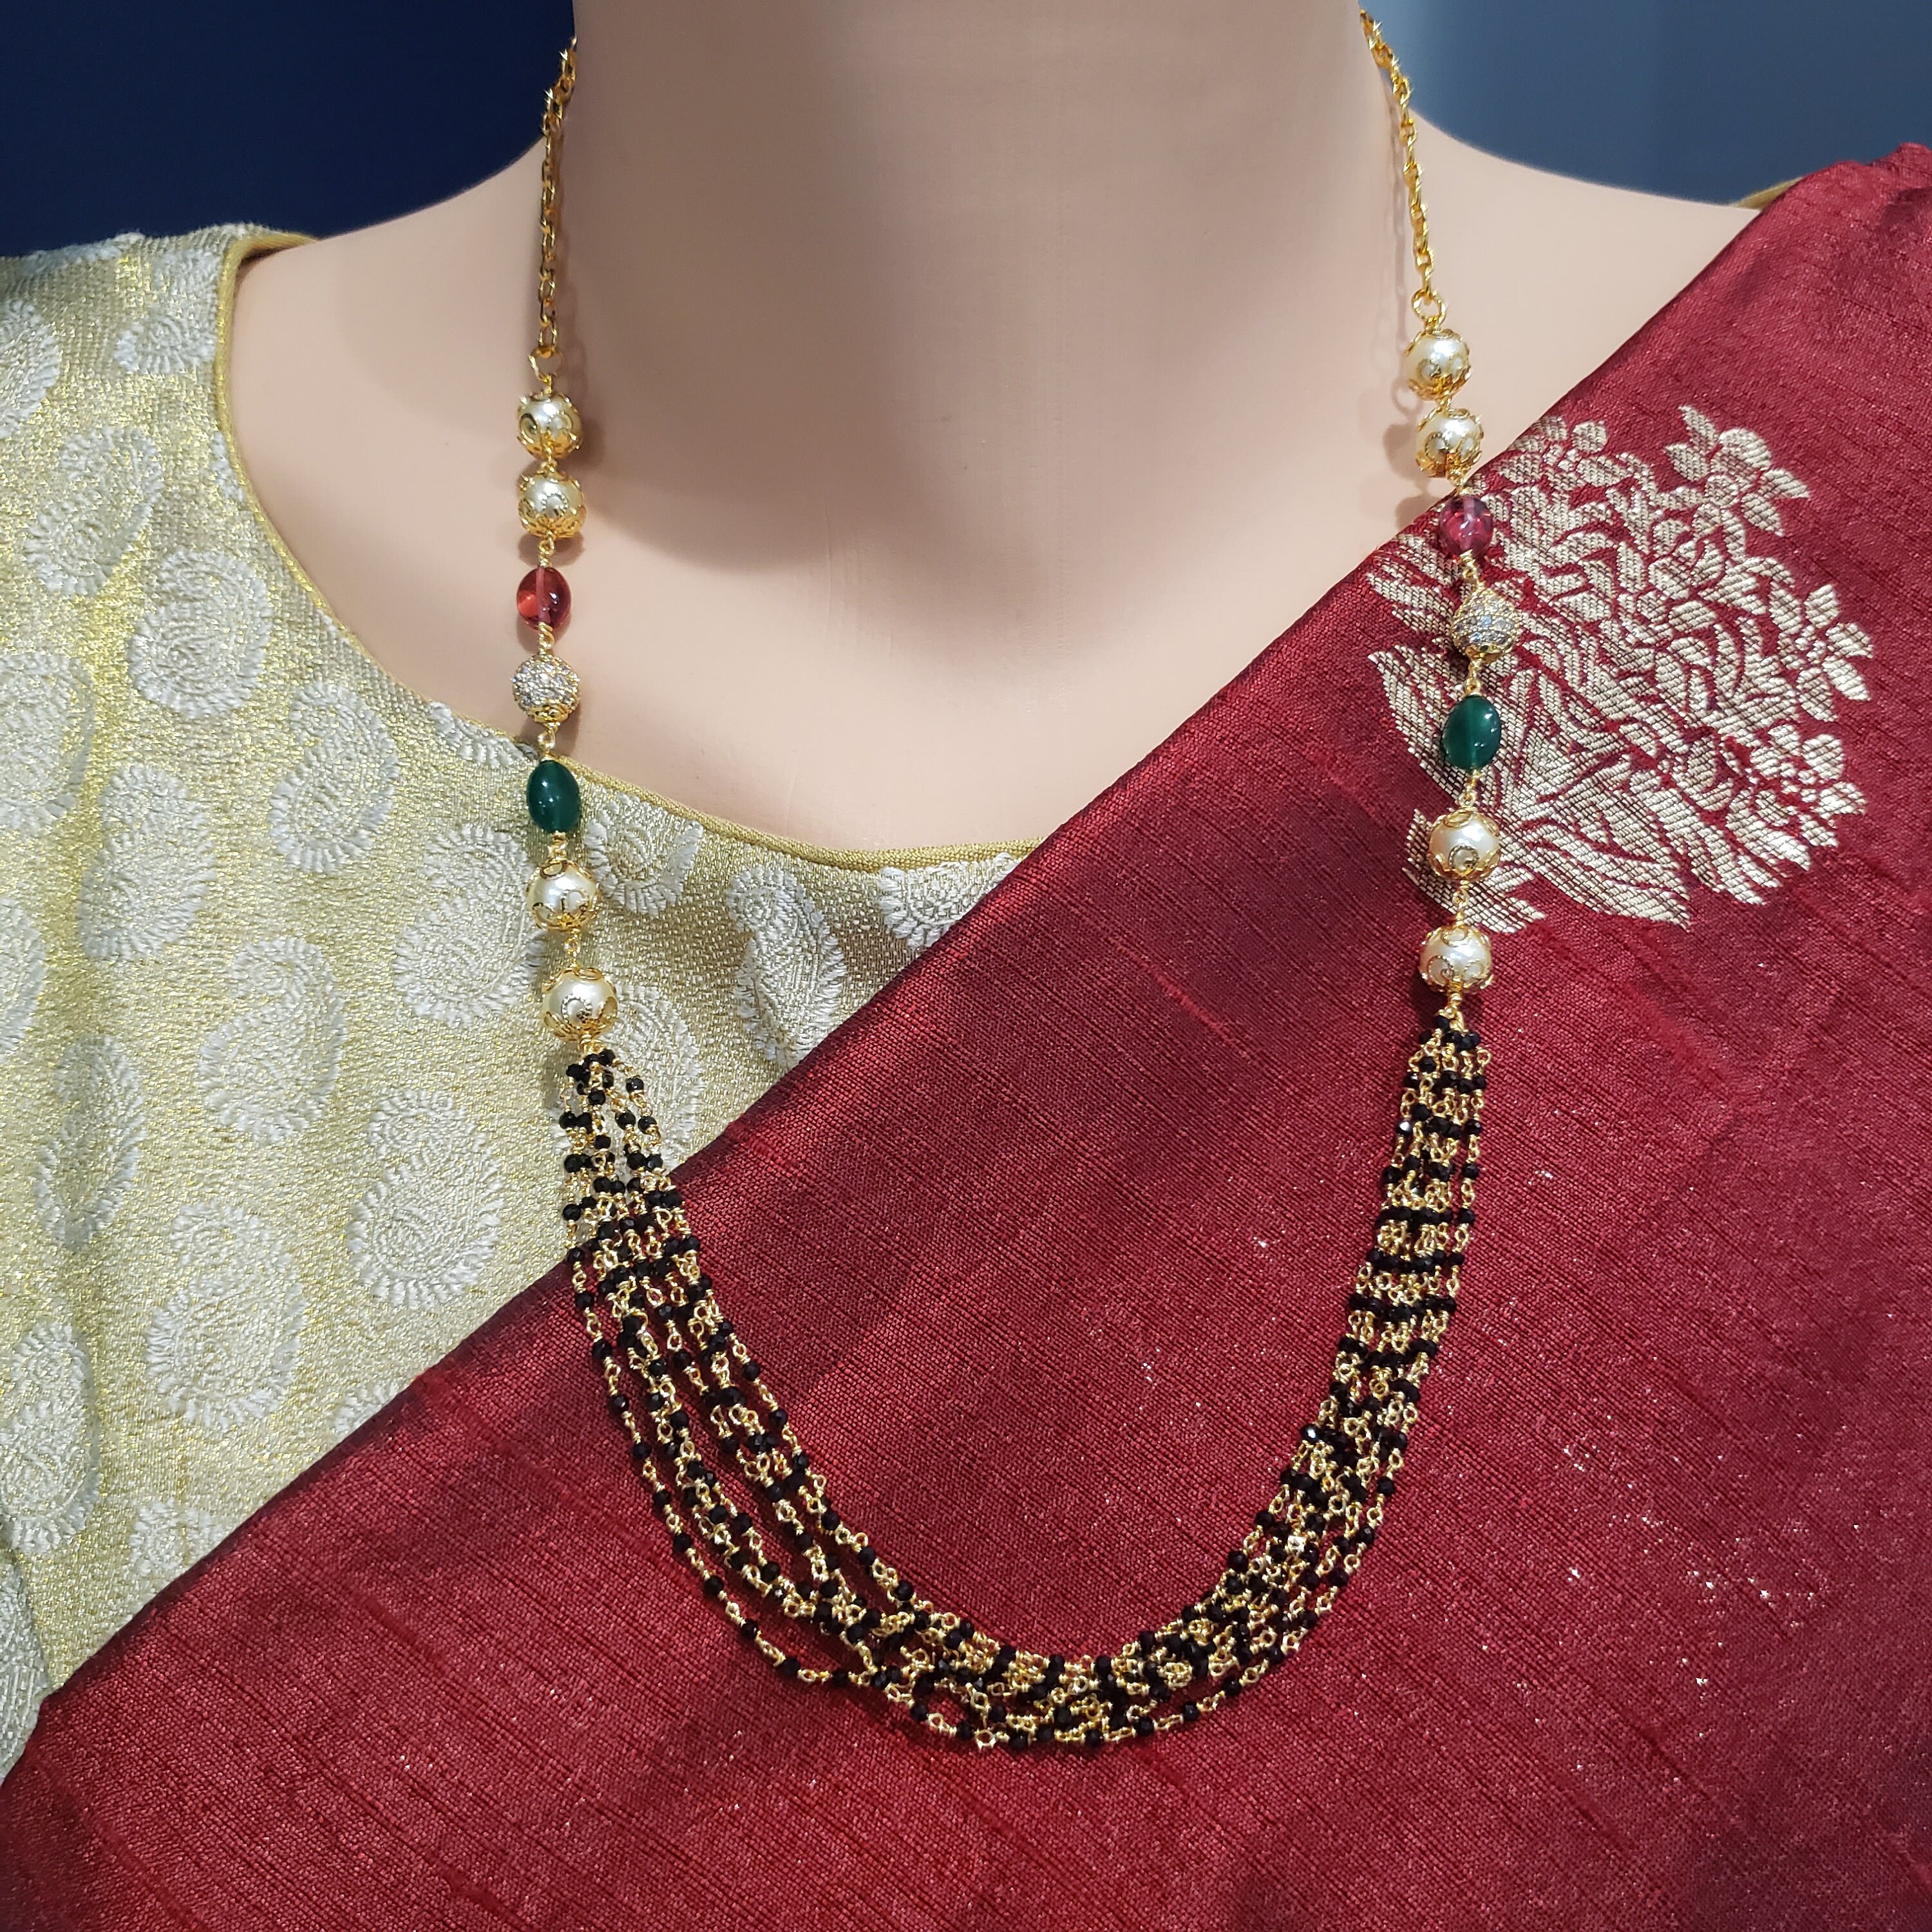 Buy Lakshmi Temple Jewelry Online For Women – Gehna Shop